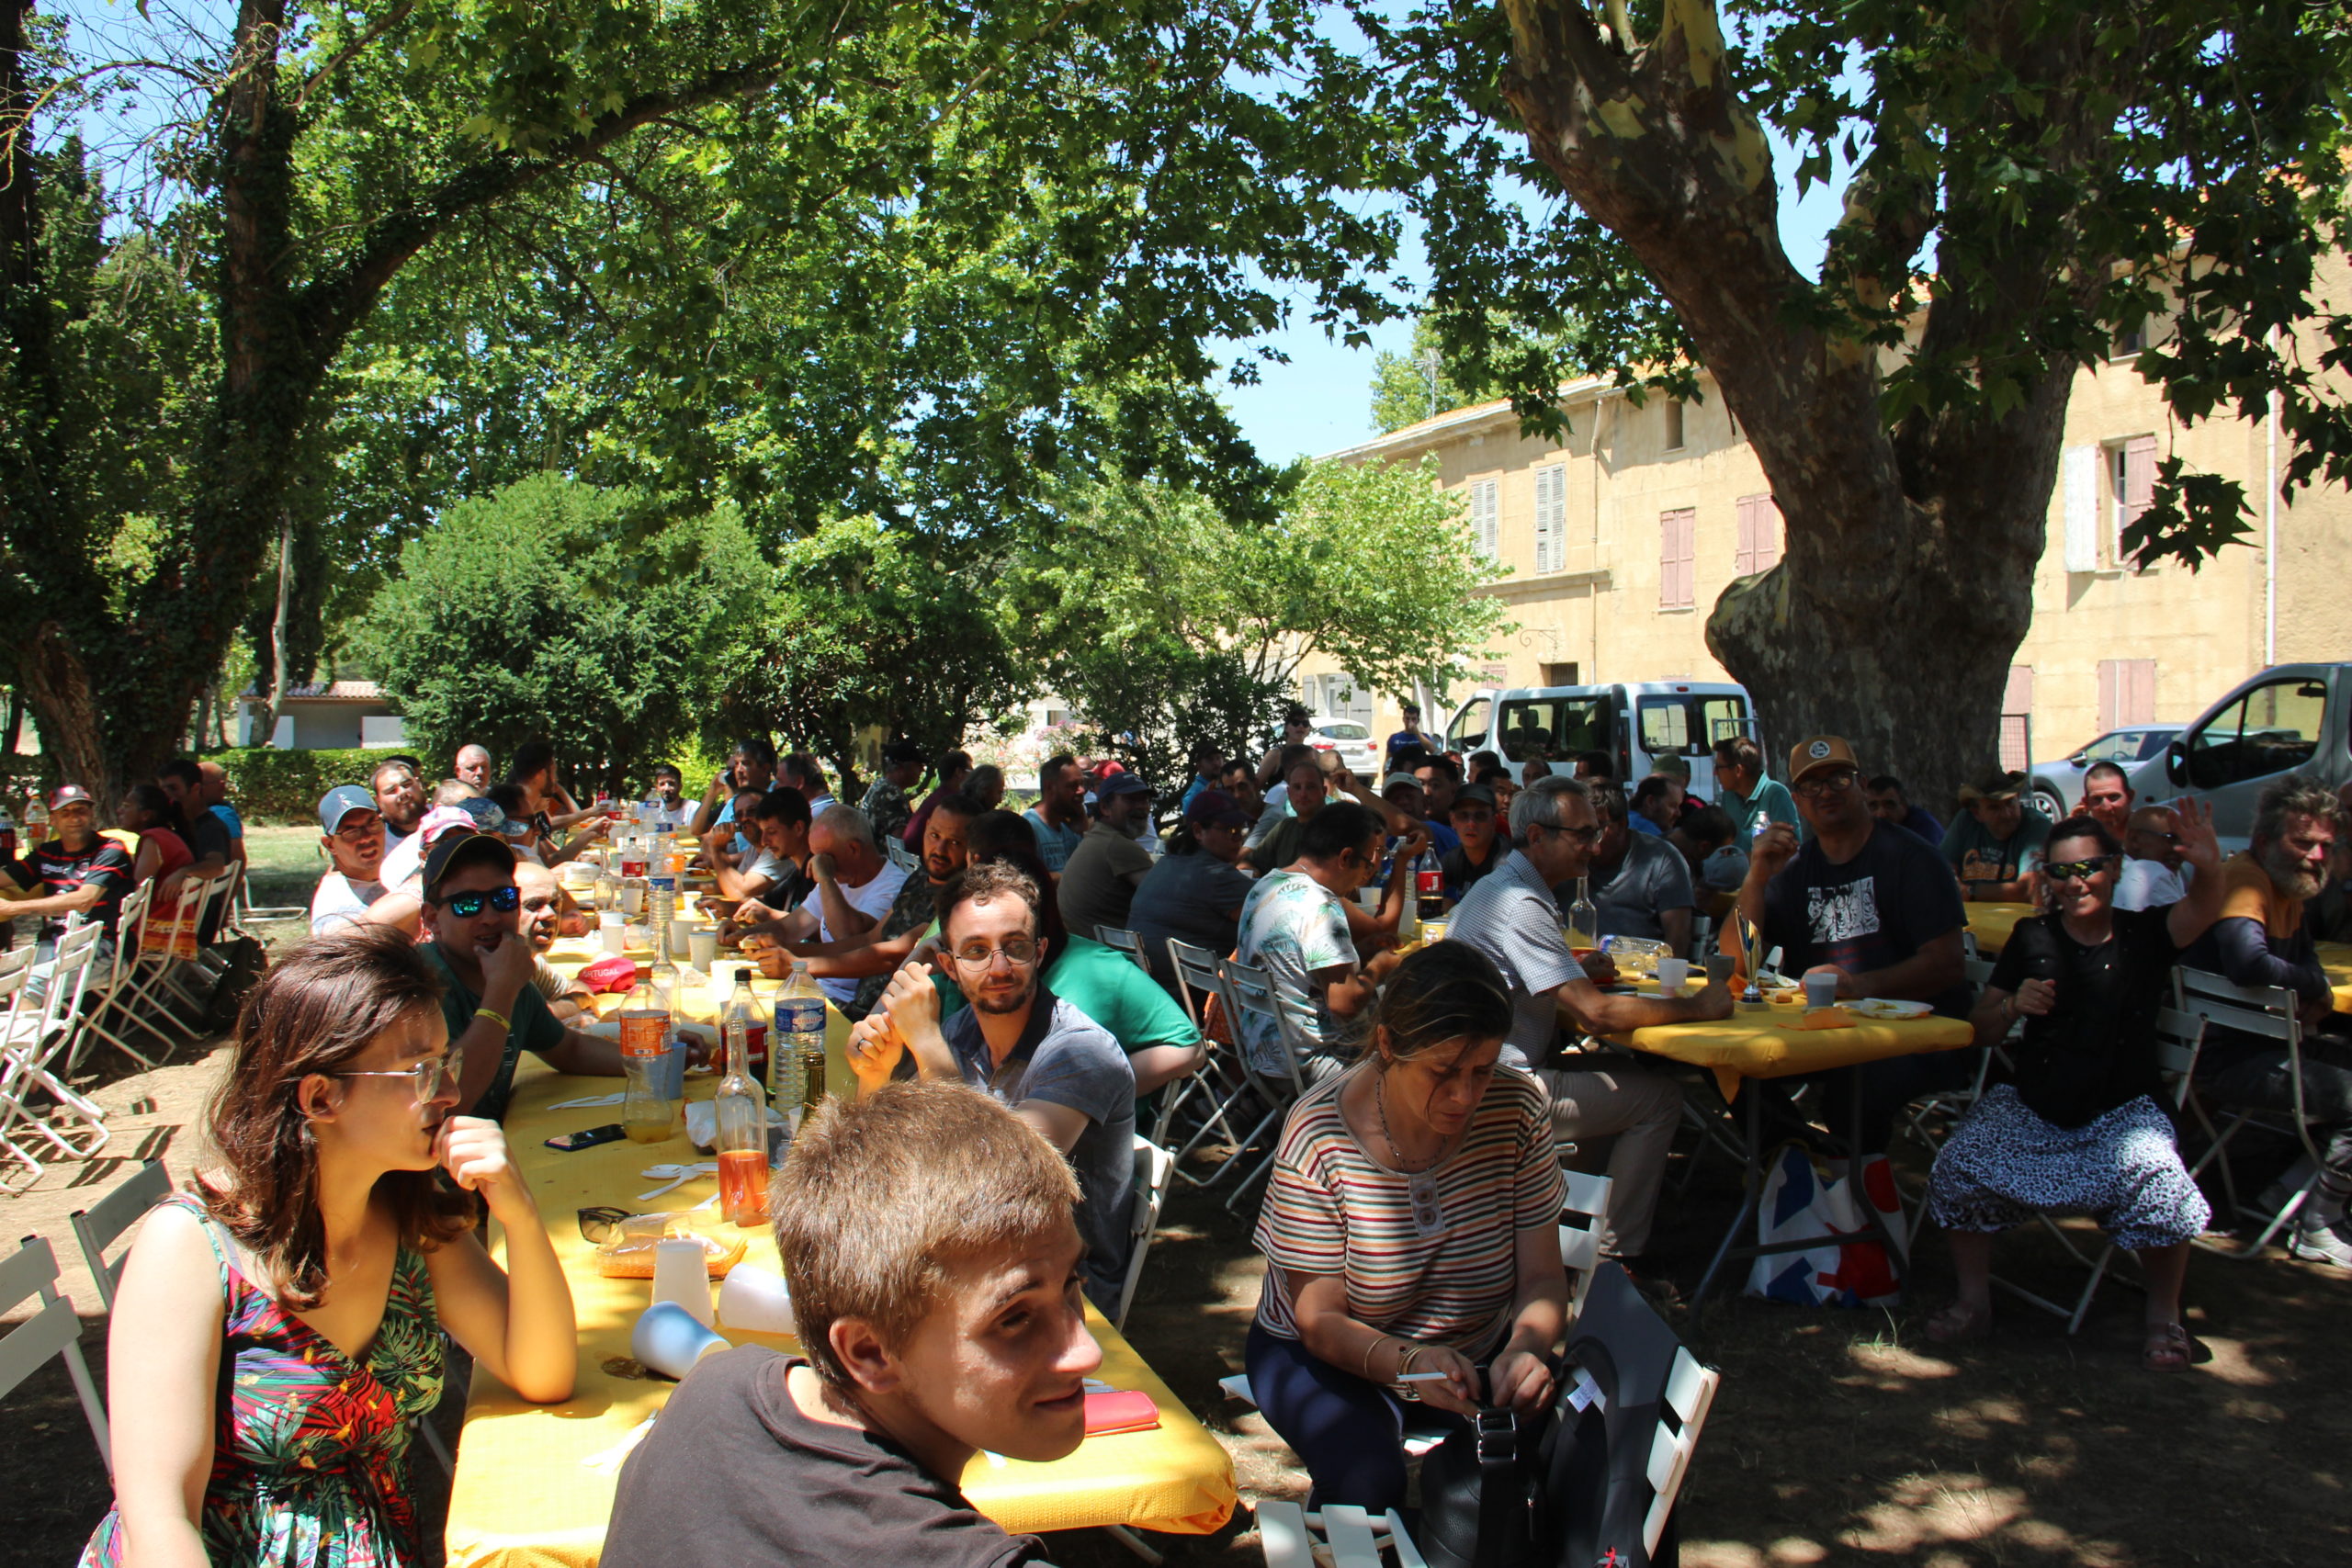 L'ensemble des personnels et travailleurs de l'ESAT 3 terroirs partagent un repas au Domaine de Sainte-Johannès, à l'extérieur, à l'ombre des arbres par un temps magnifique